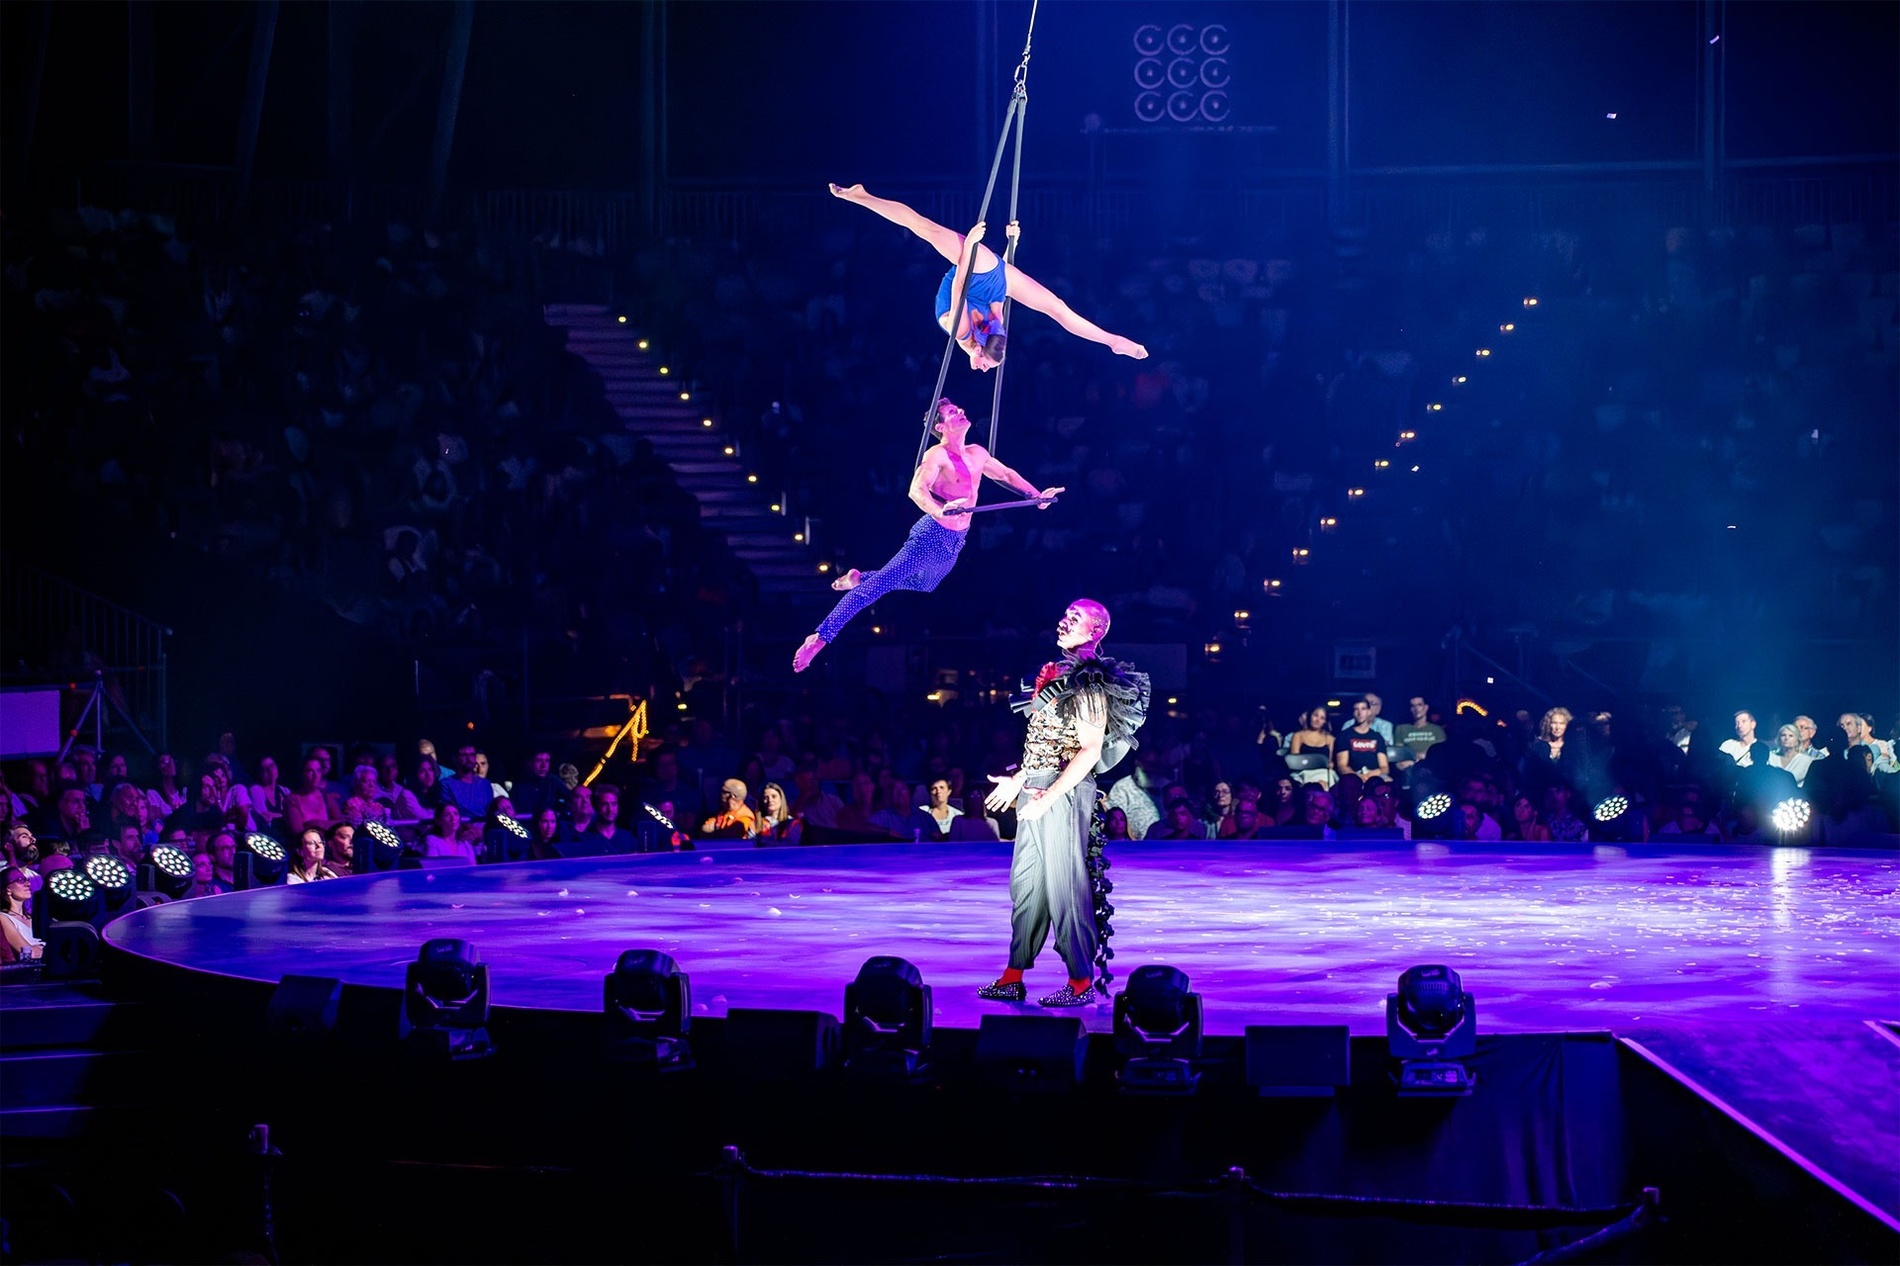 un grup d' artistes acrobatics actuant en un escenari